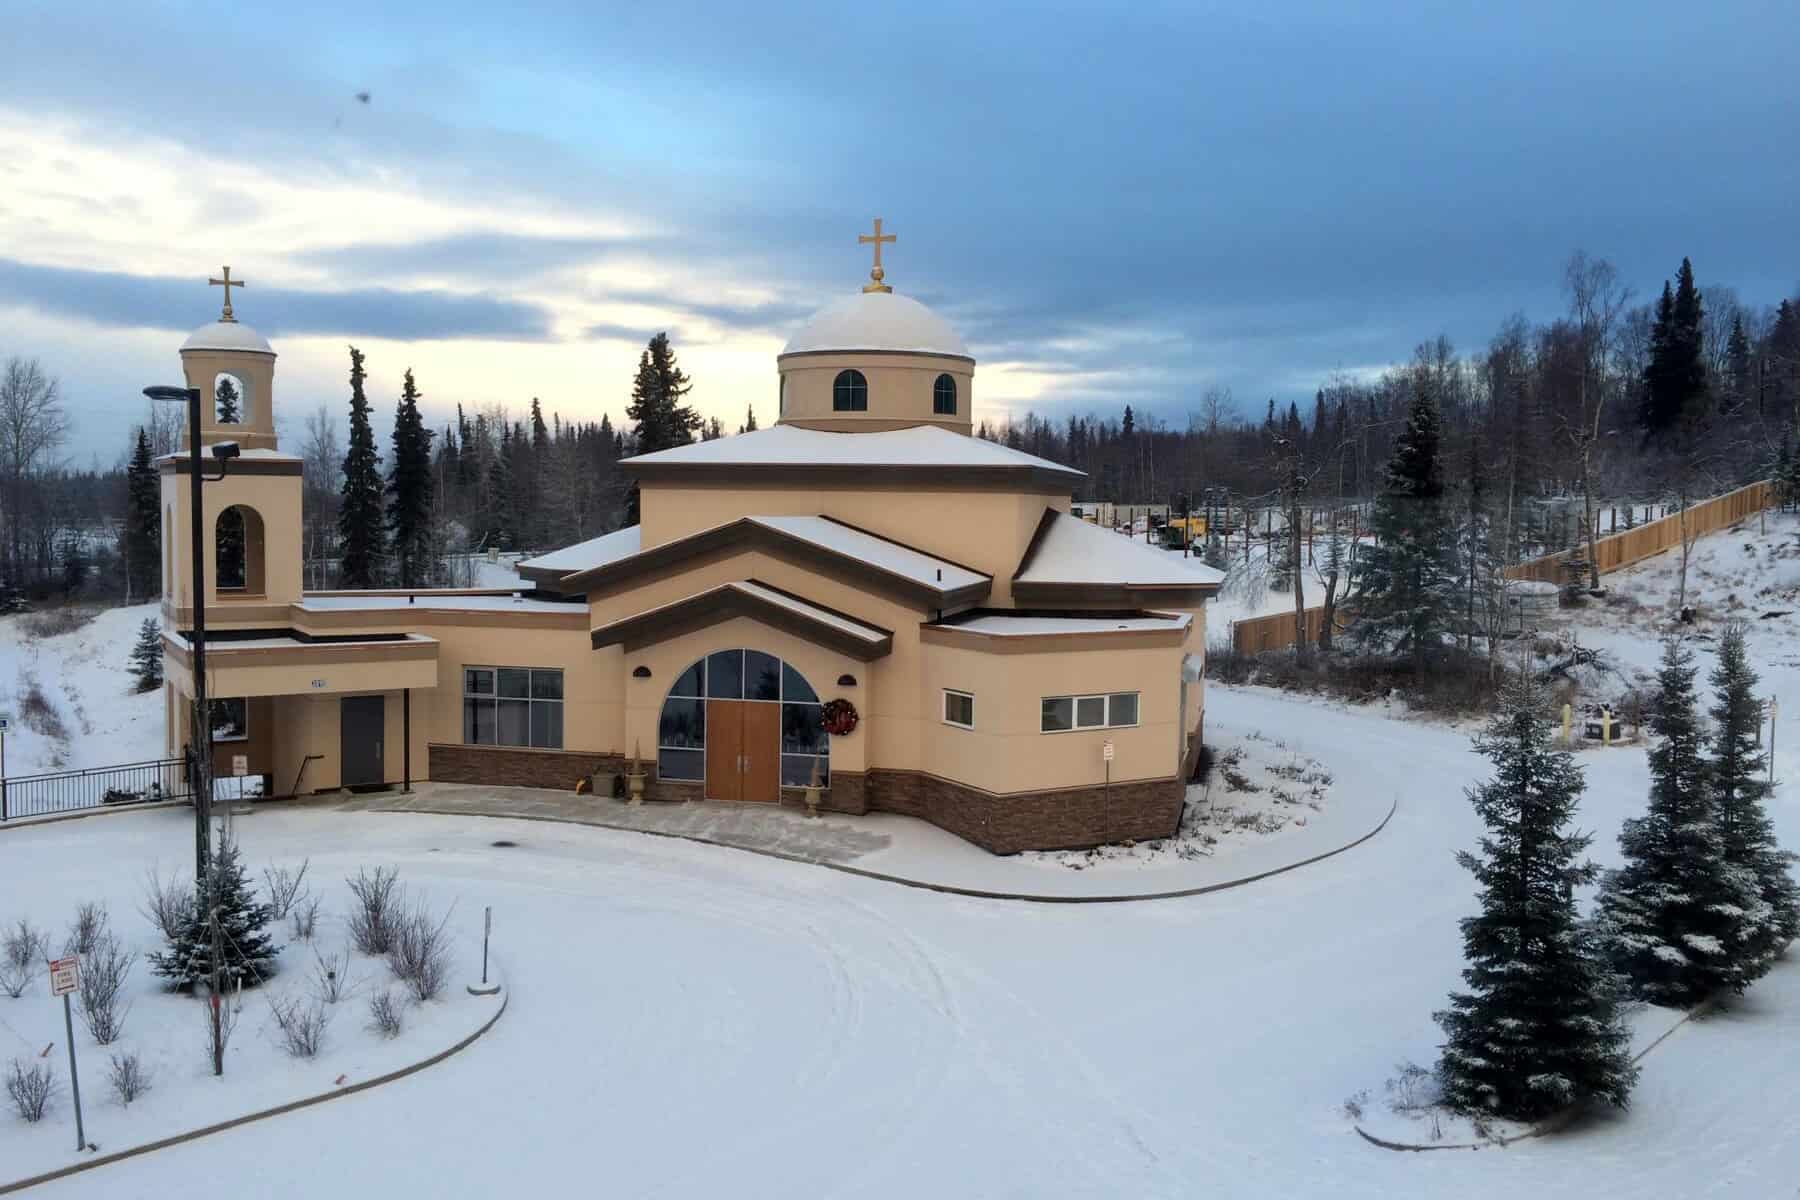 Holy Transfiguration Greek Orthodox Church, Anchorage, Alaska